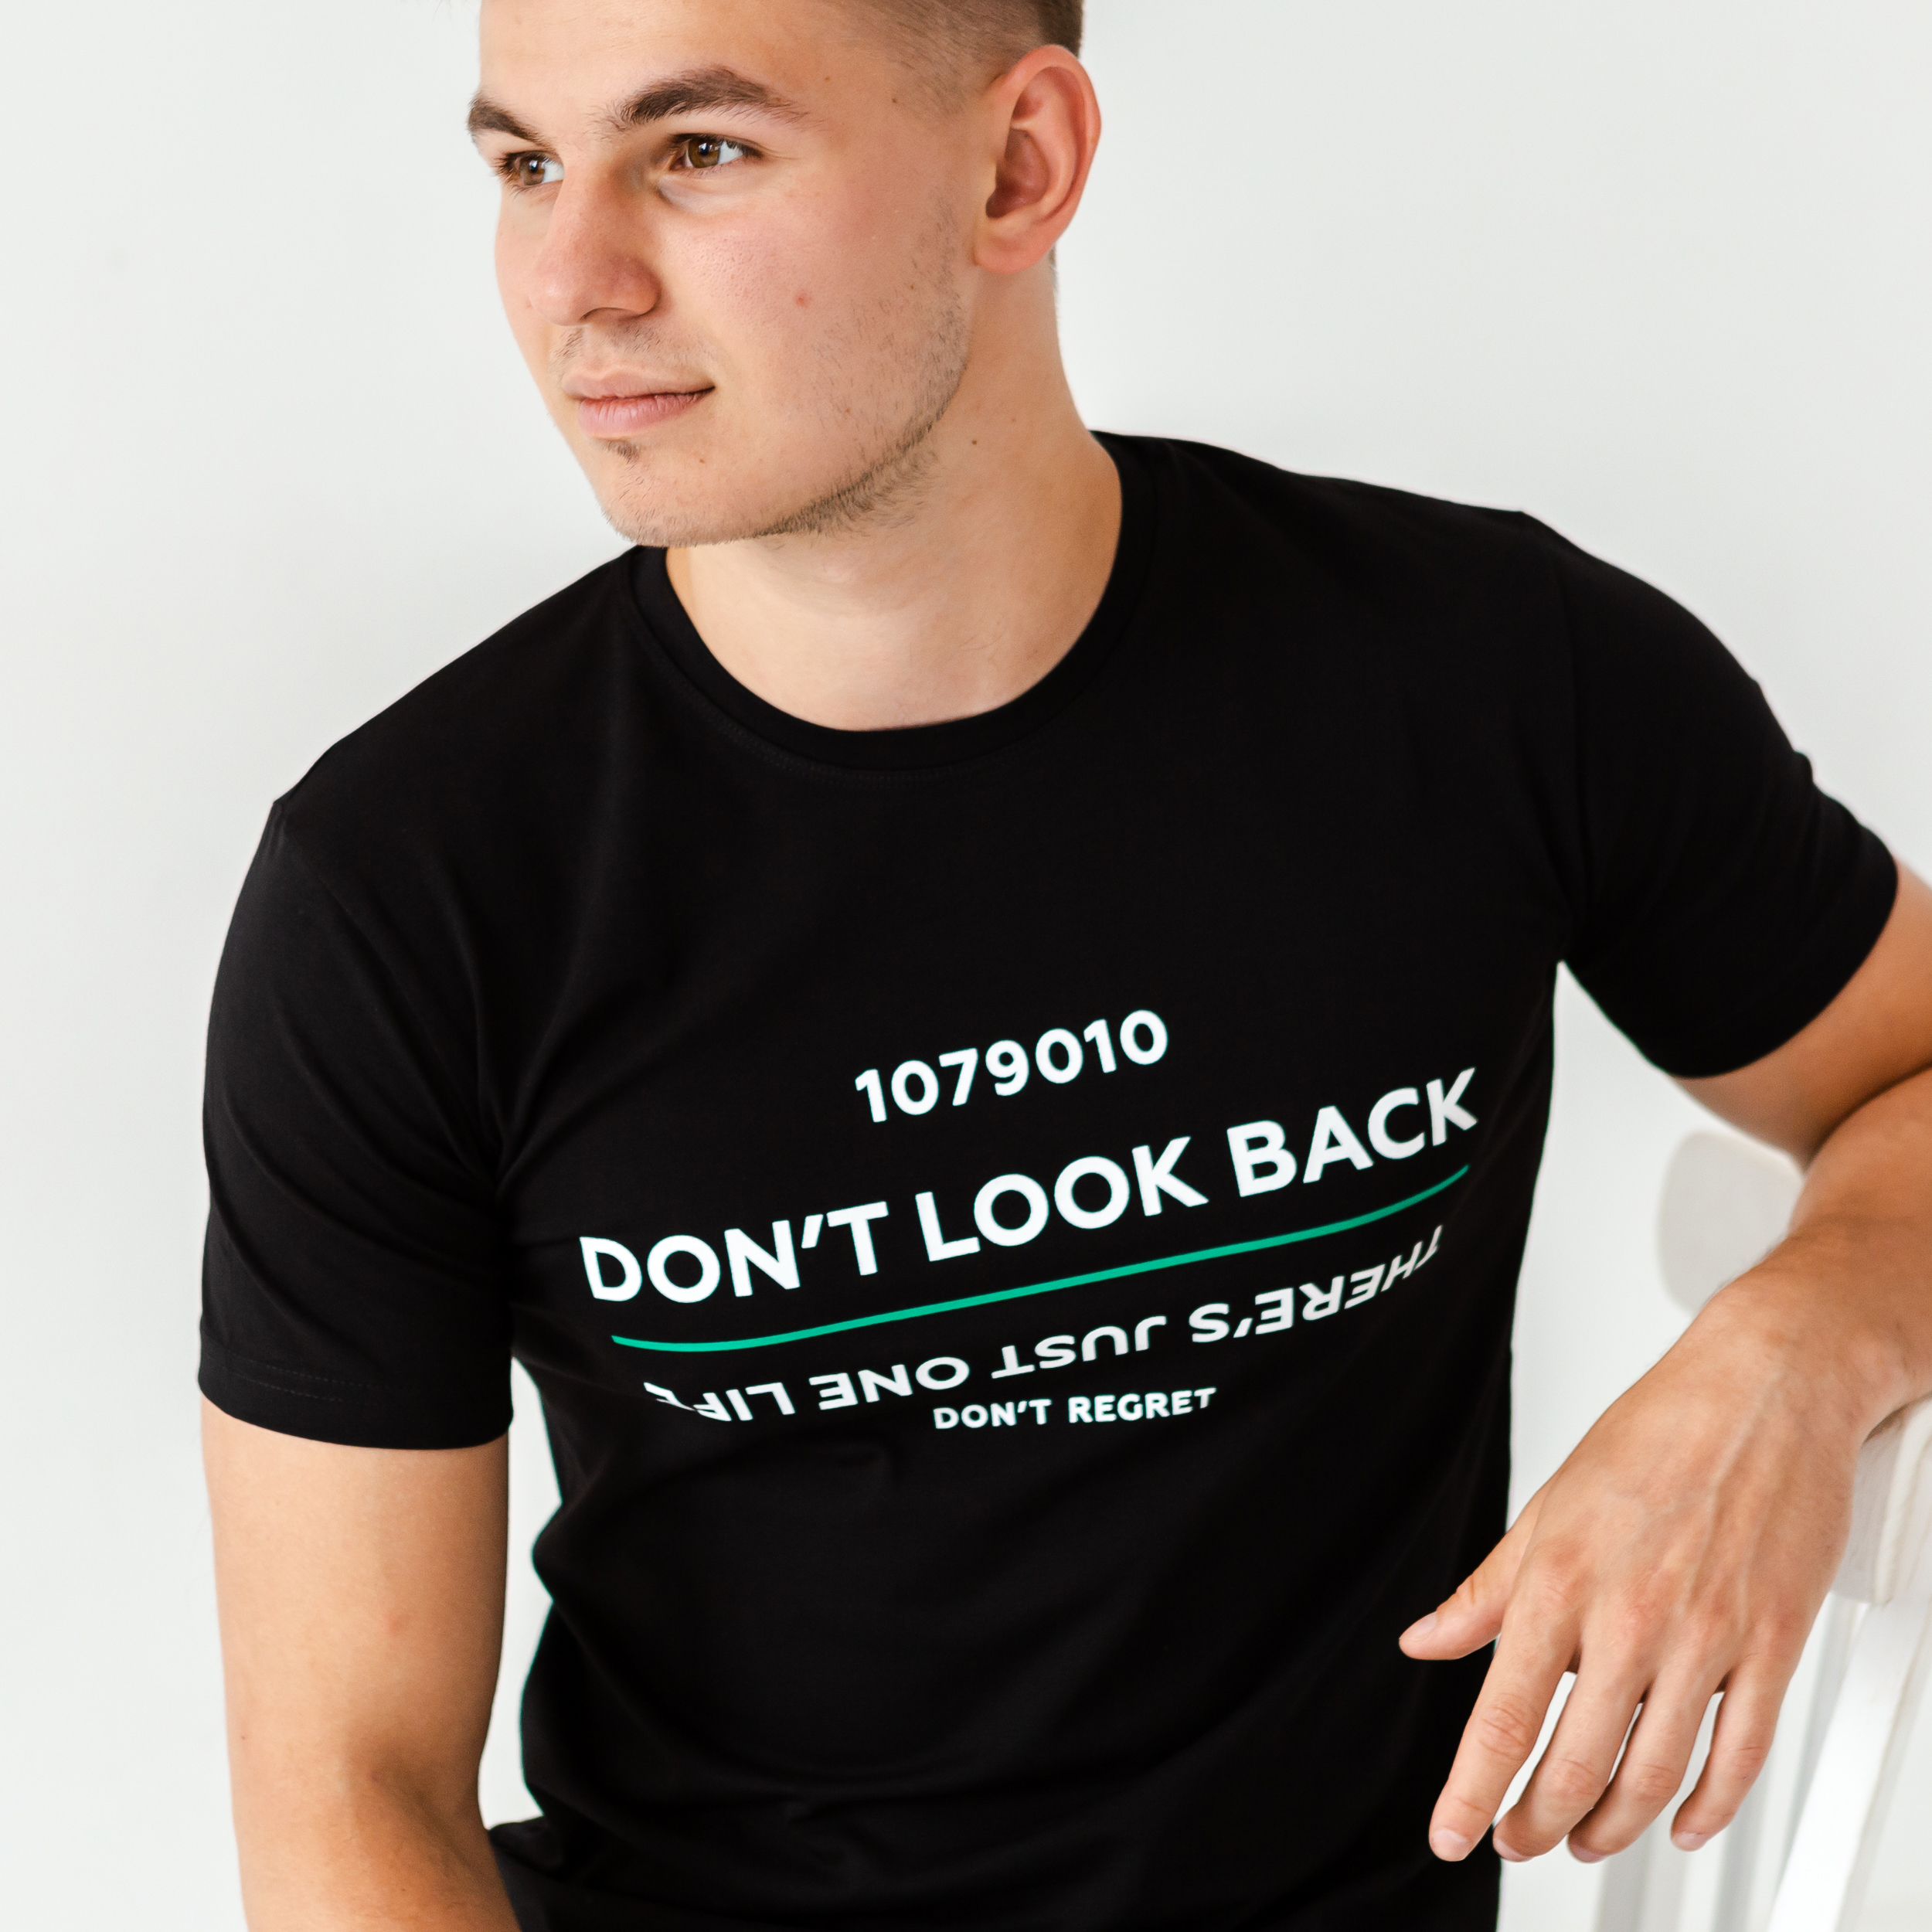 Мужская футболка dont look back 22068